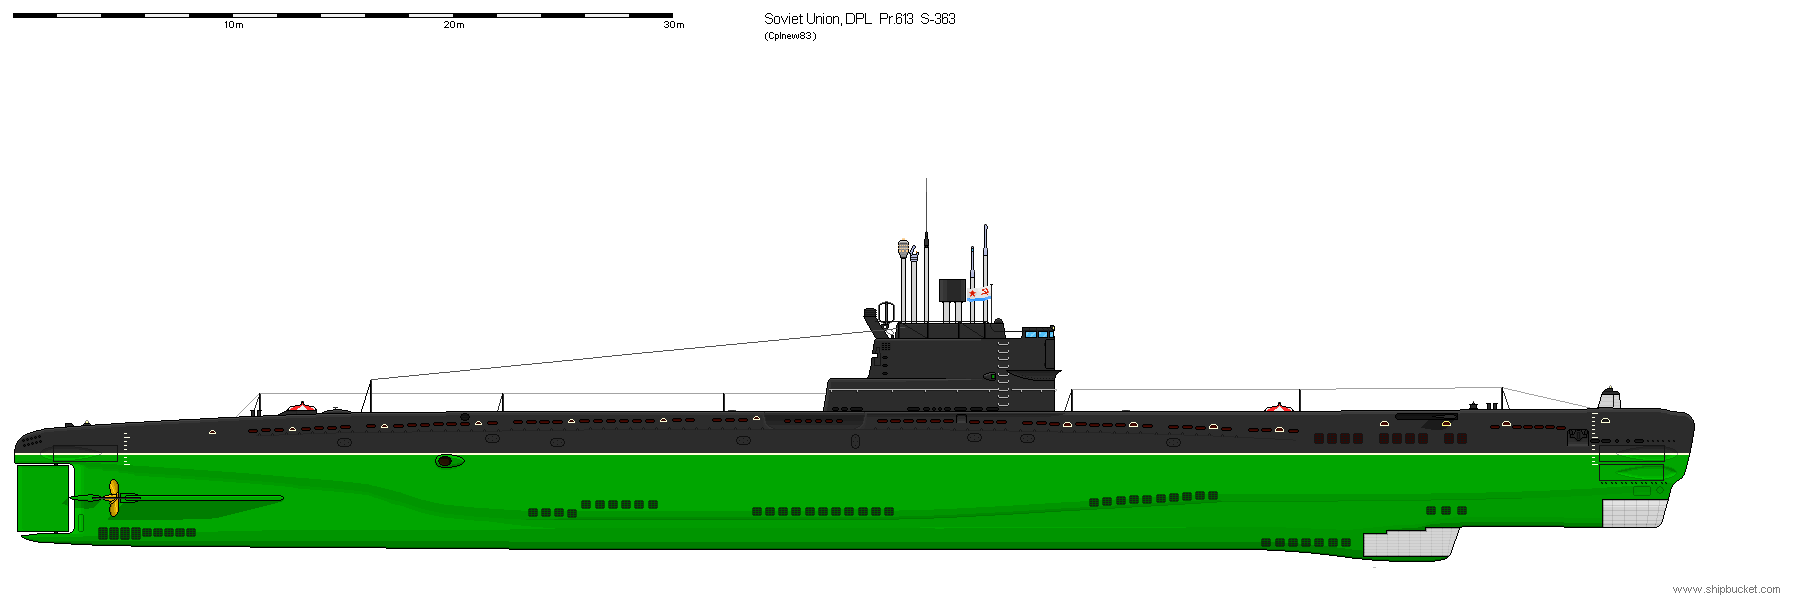 ✅ дизельная подводная лодка пр.665 (ссср) - legguns.ru